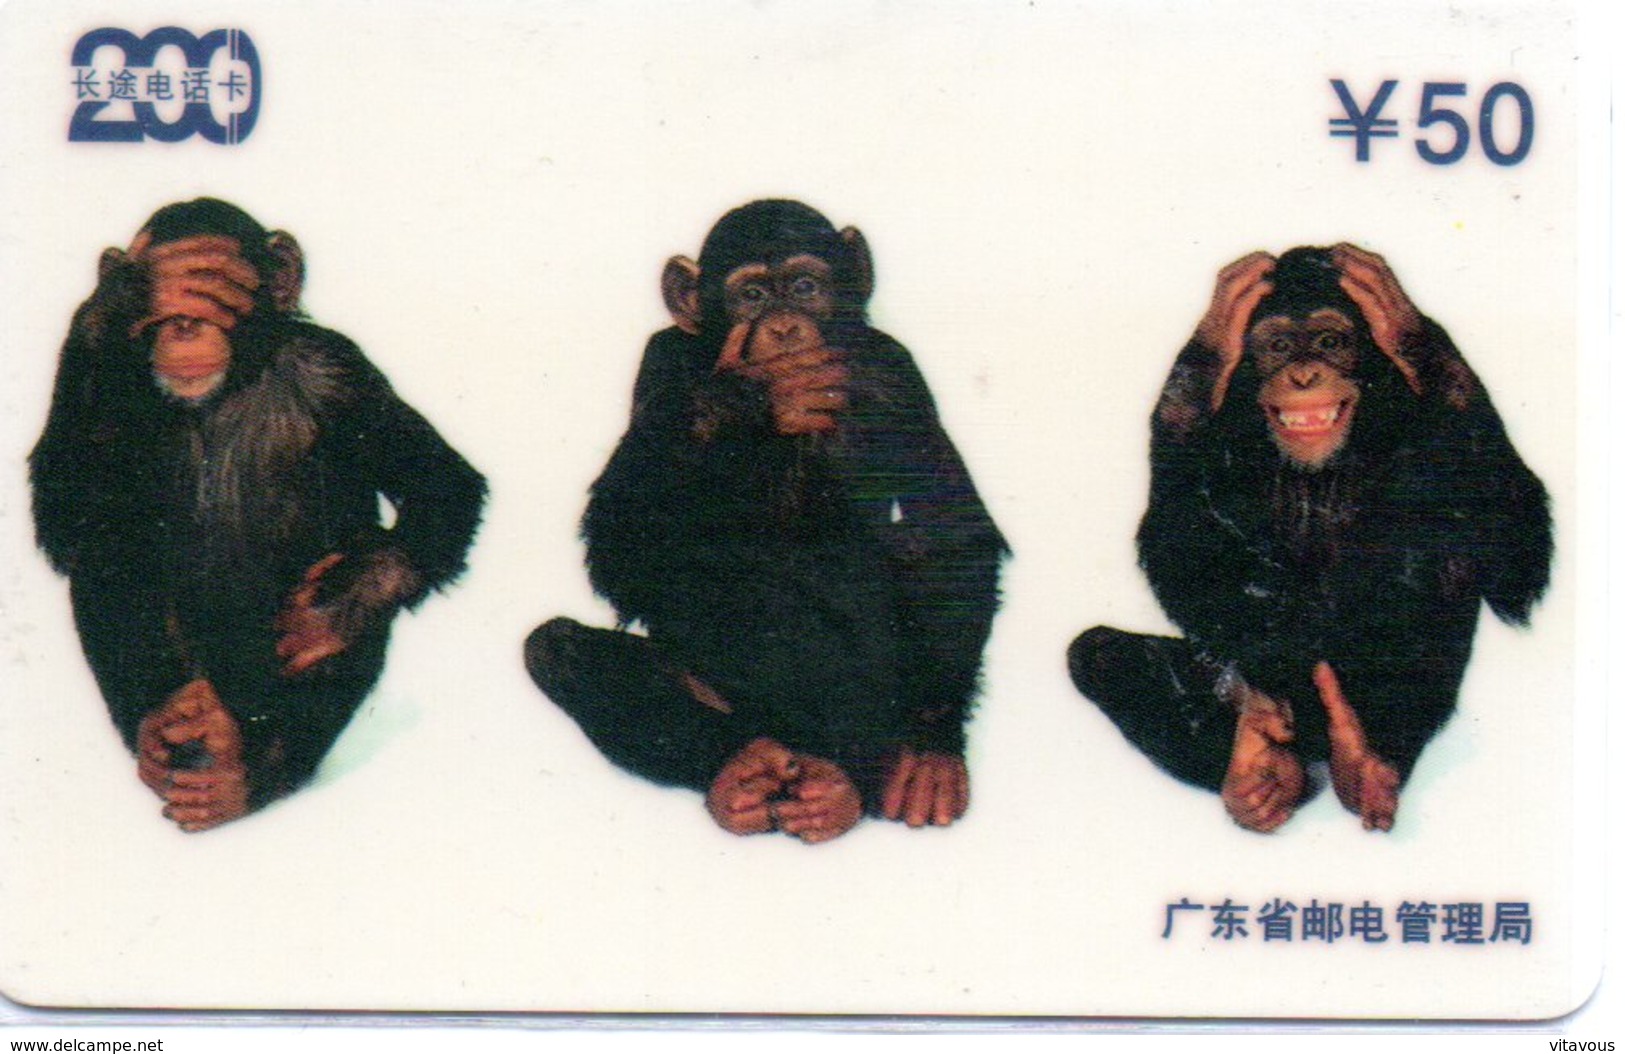 Singe Monkey Télécarte Magnétique Chine Phonecard (D 491) - China